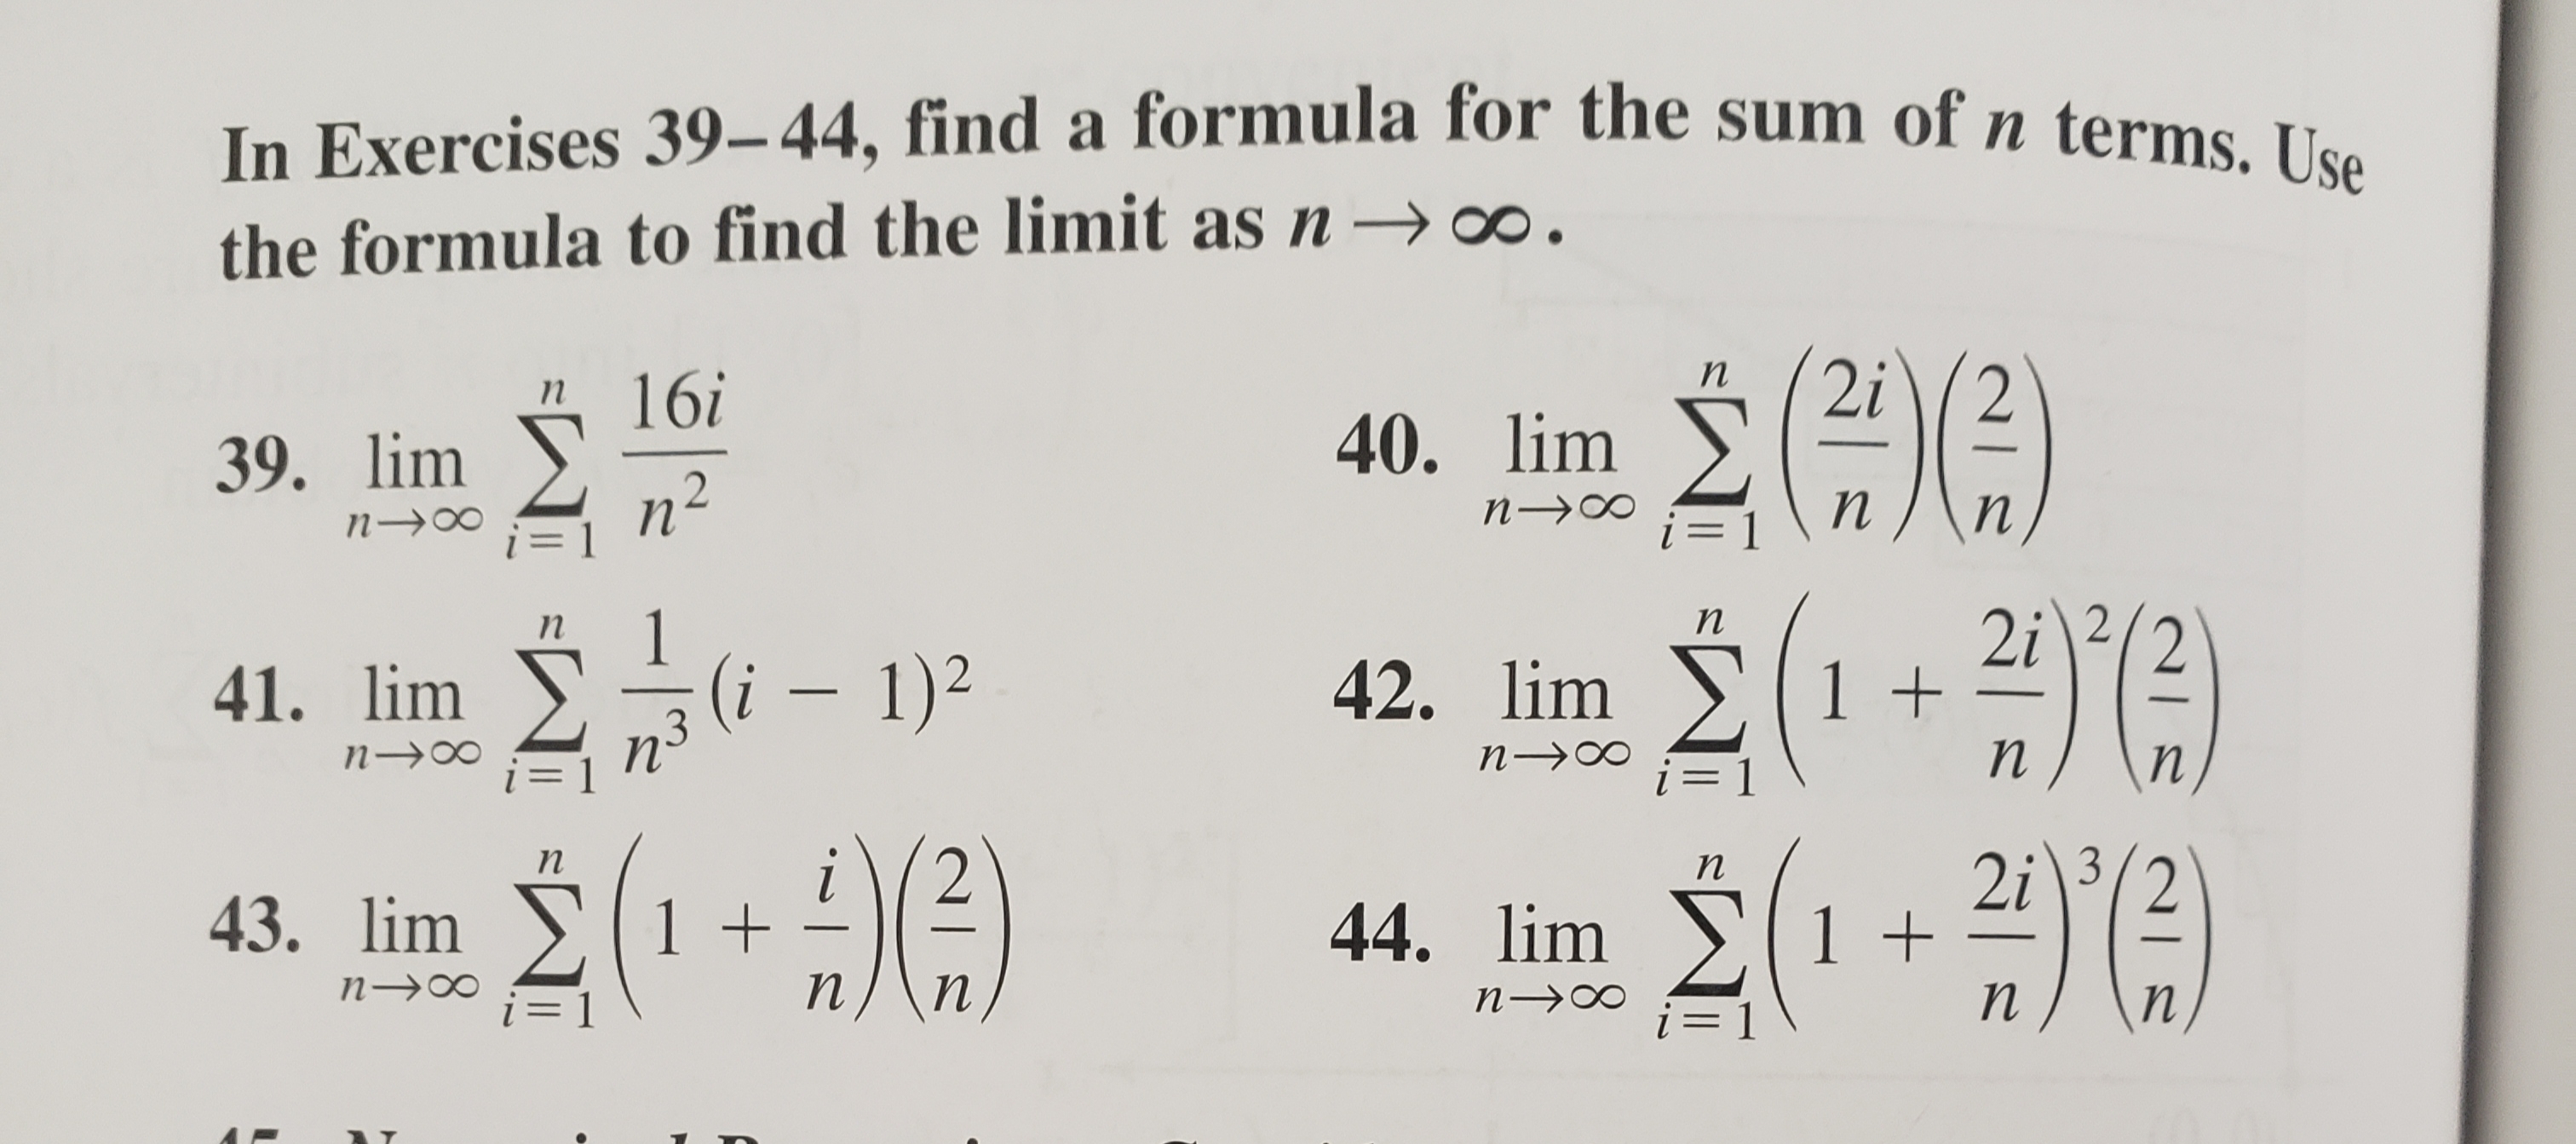 im E(1+ 2/3)
1 +
-
n→∞
